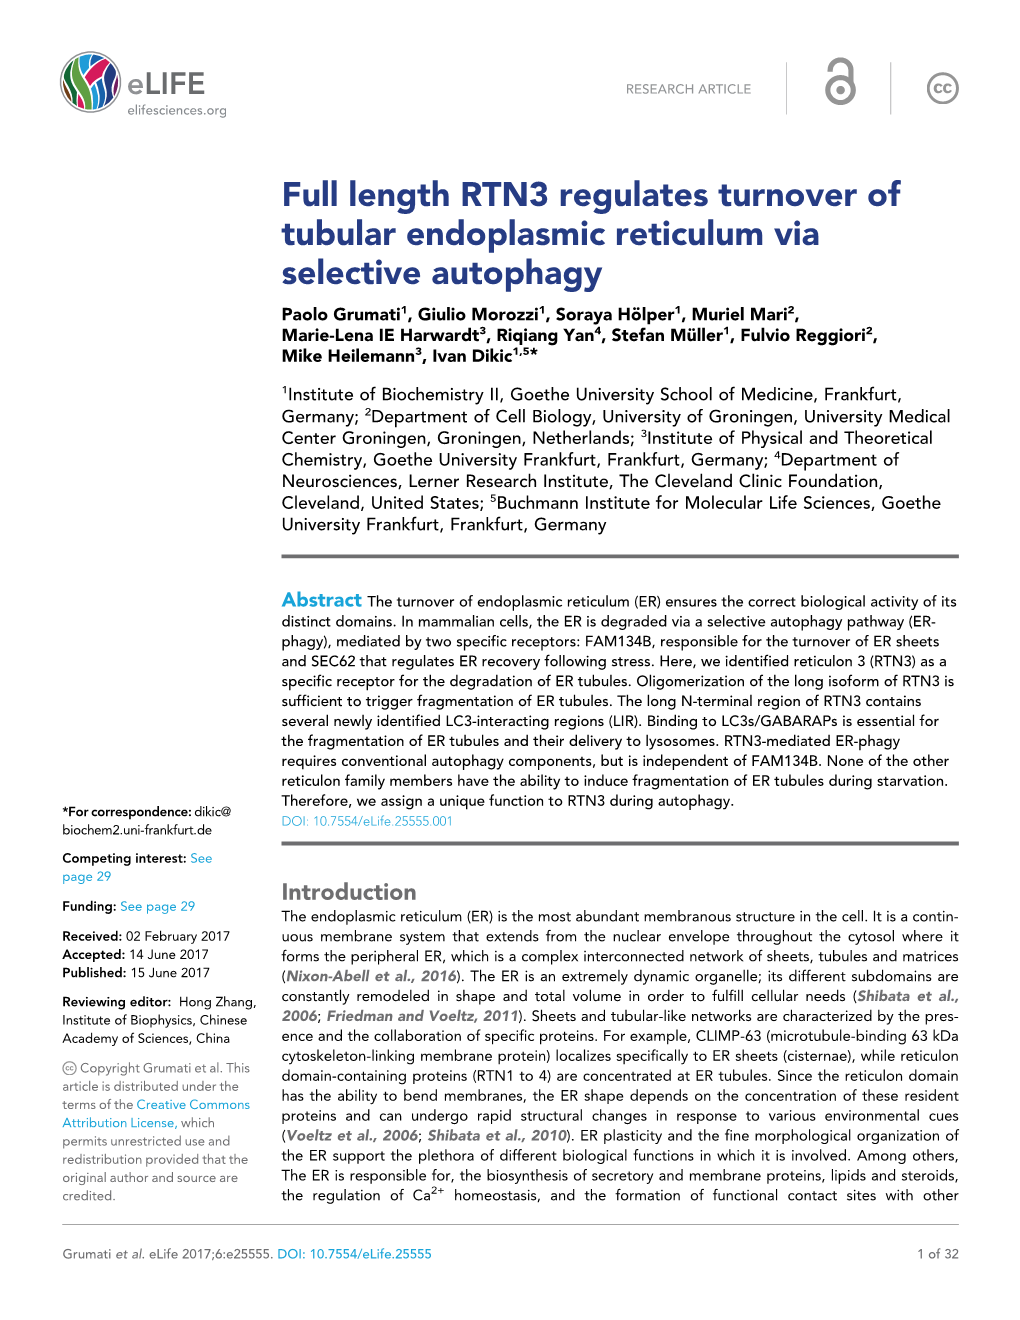 Full Length RTN3 Regulates Turnover of Tubular Endoplasmic